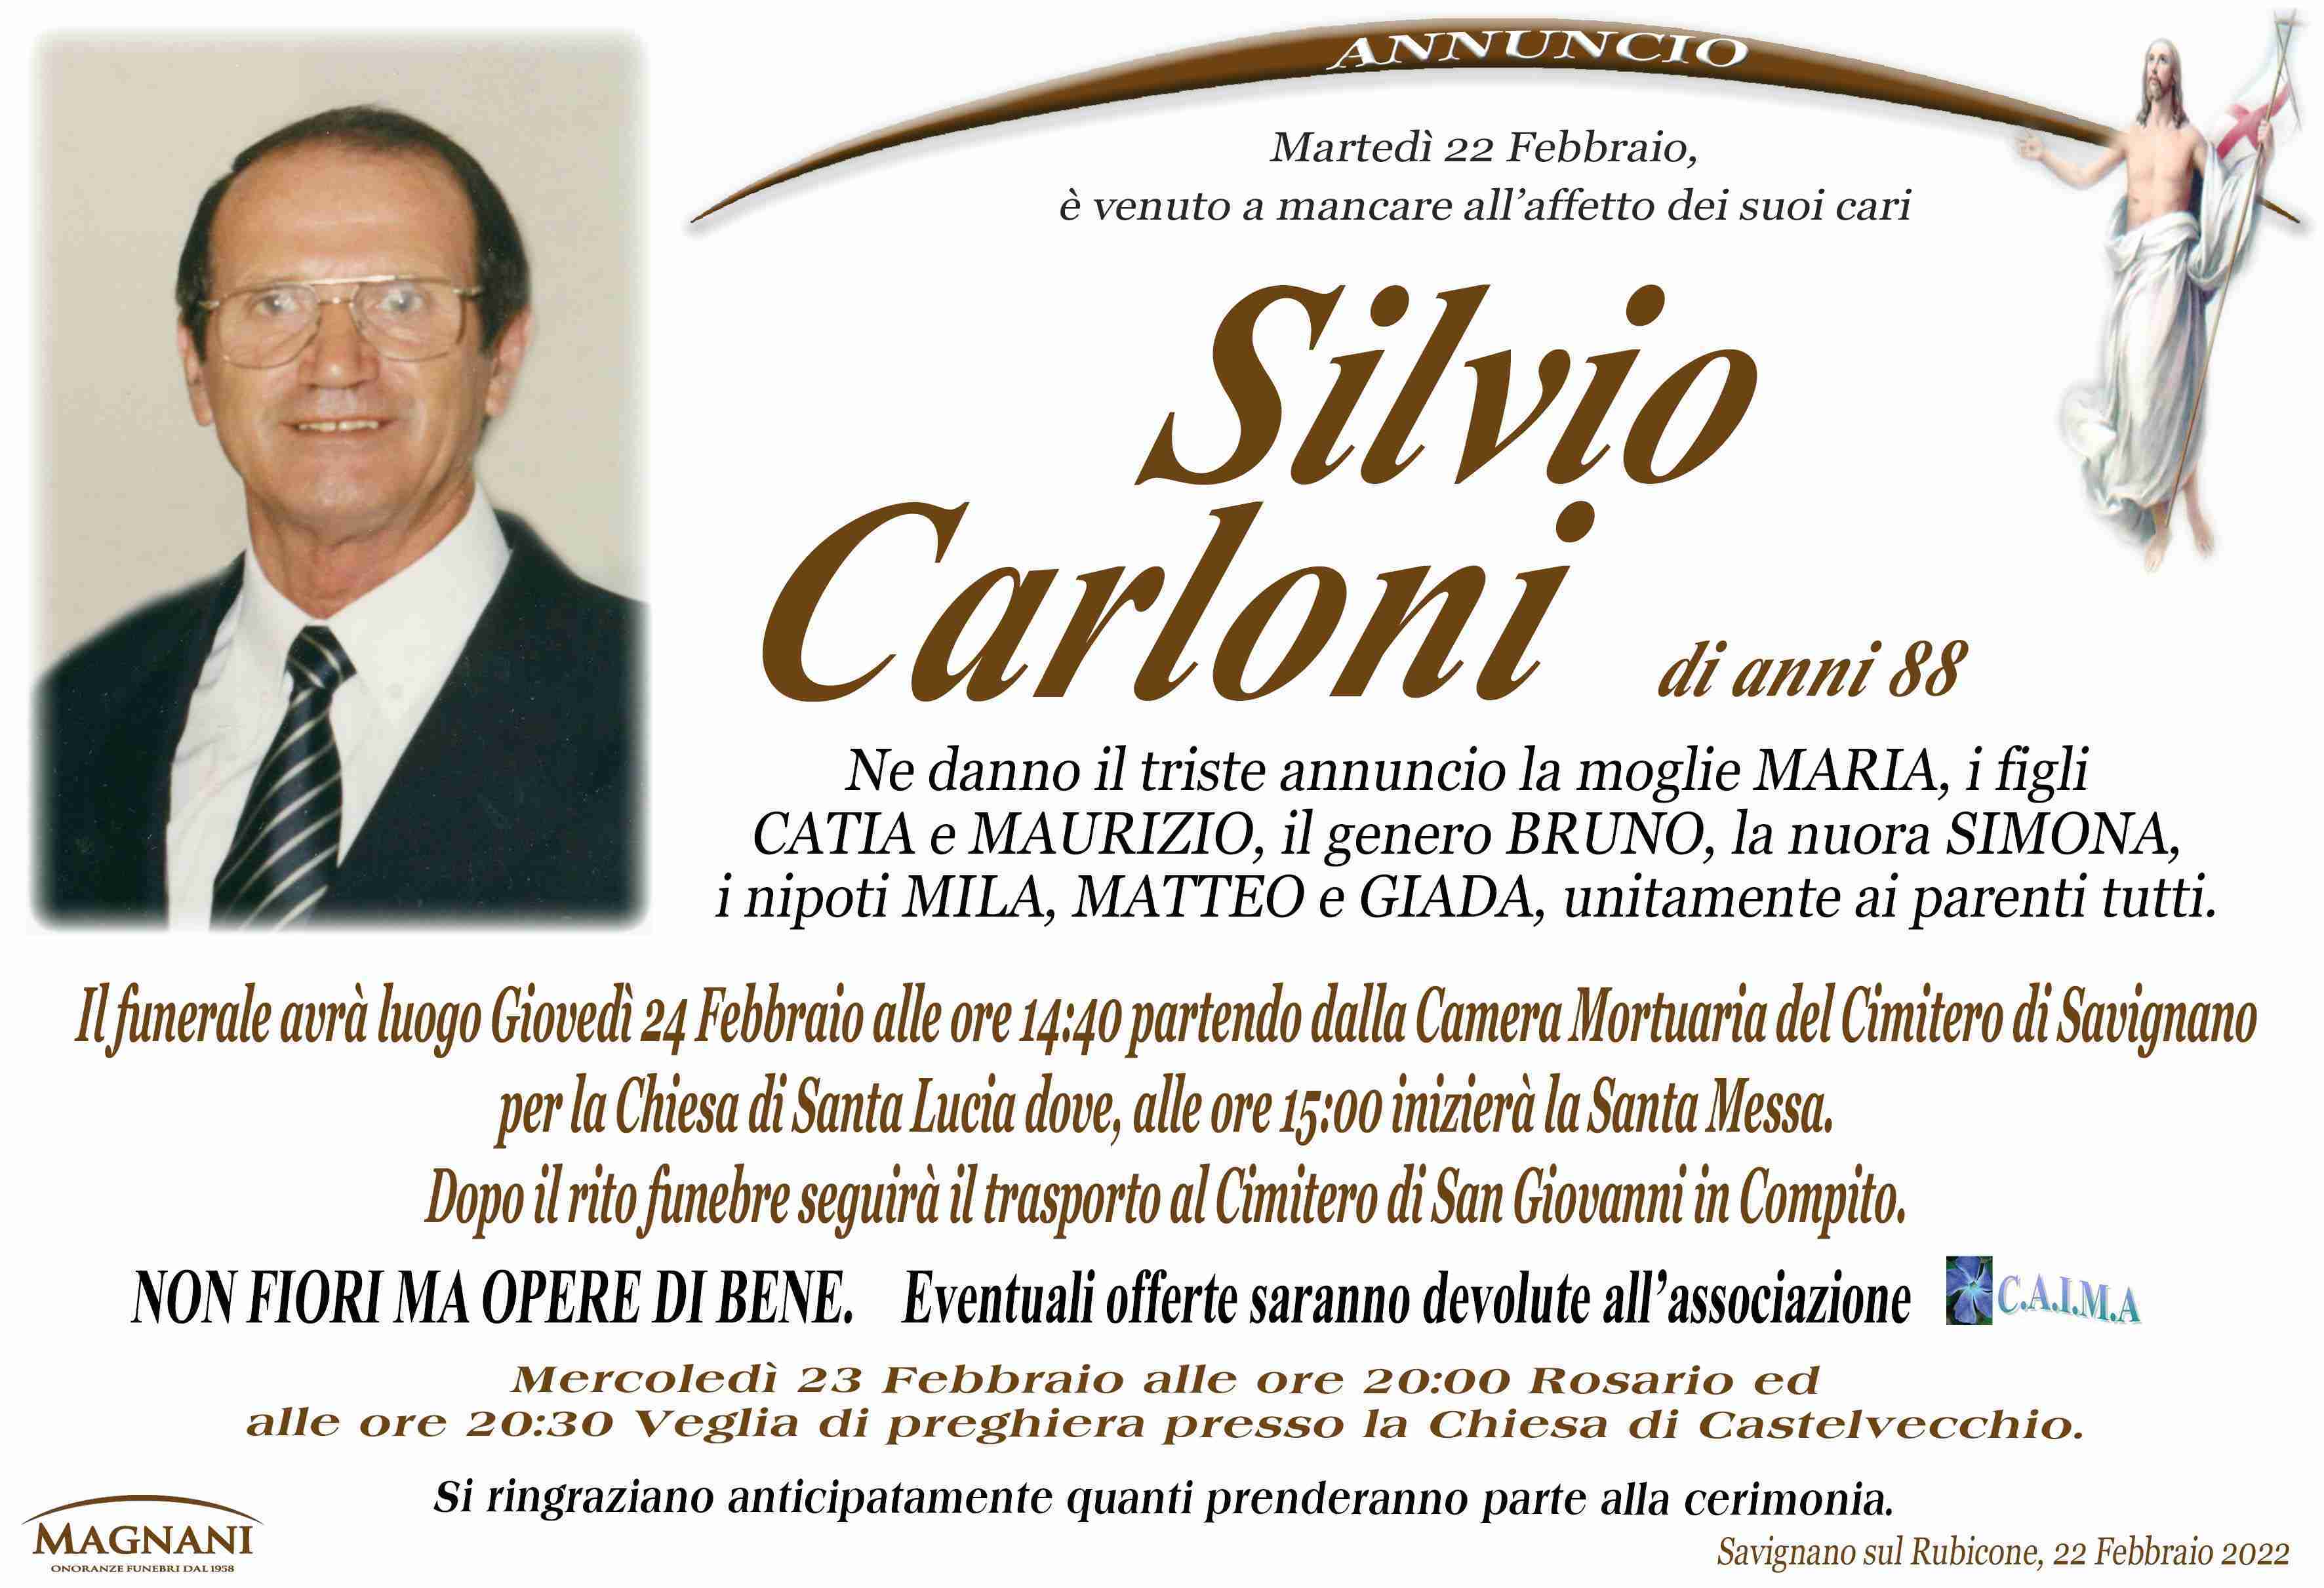 Silvio Carloni